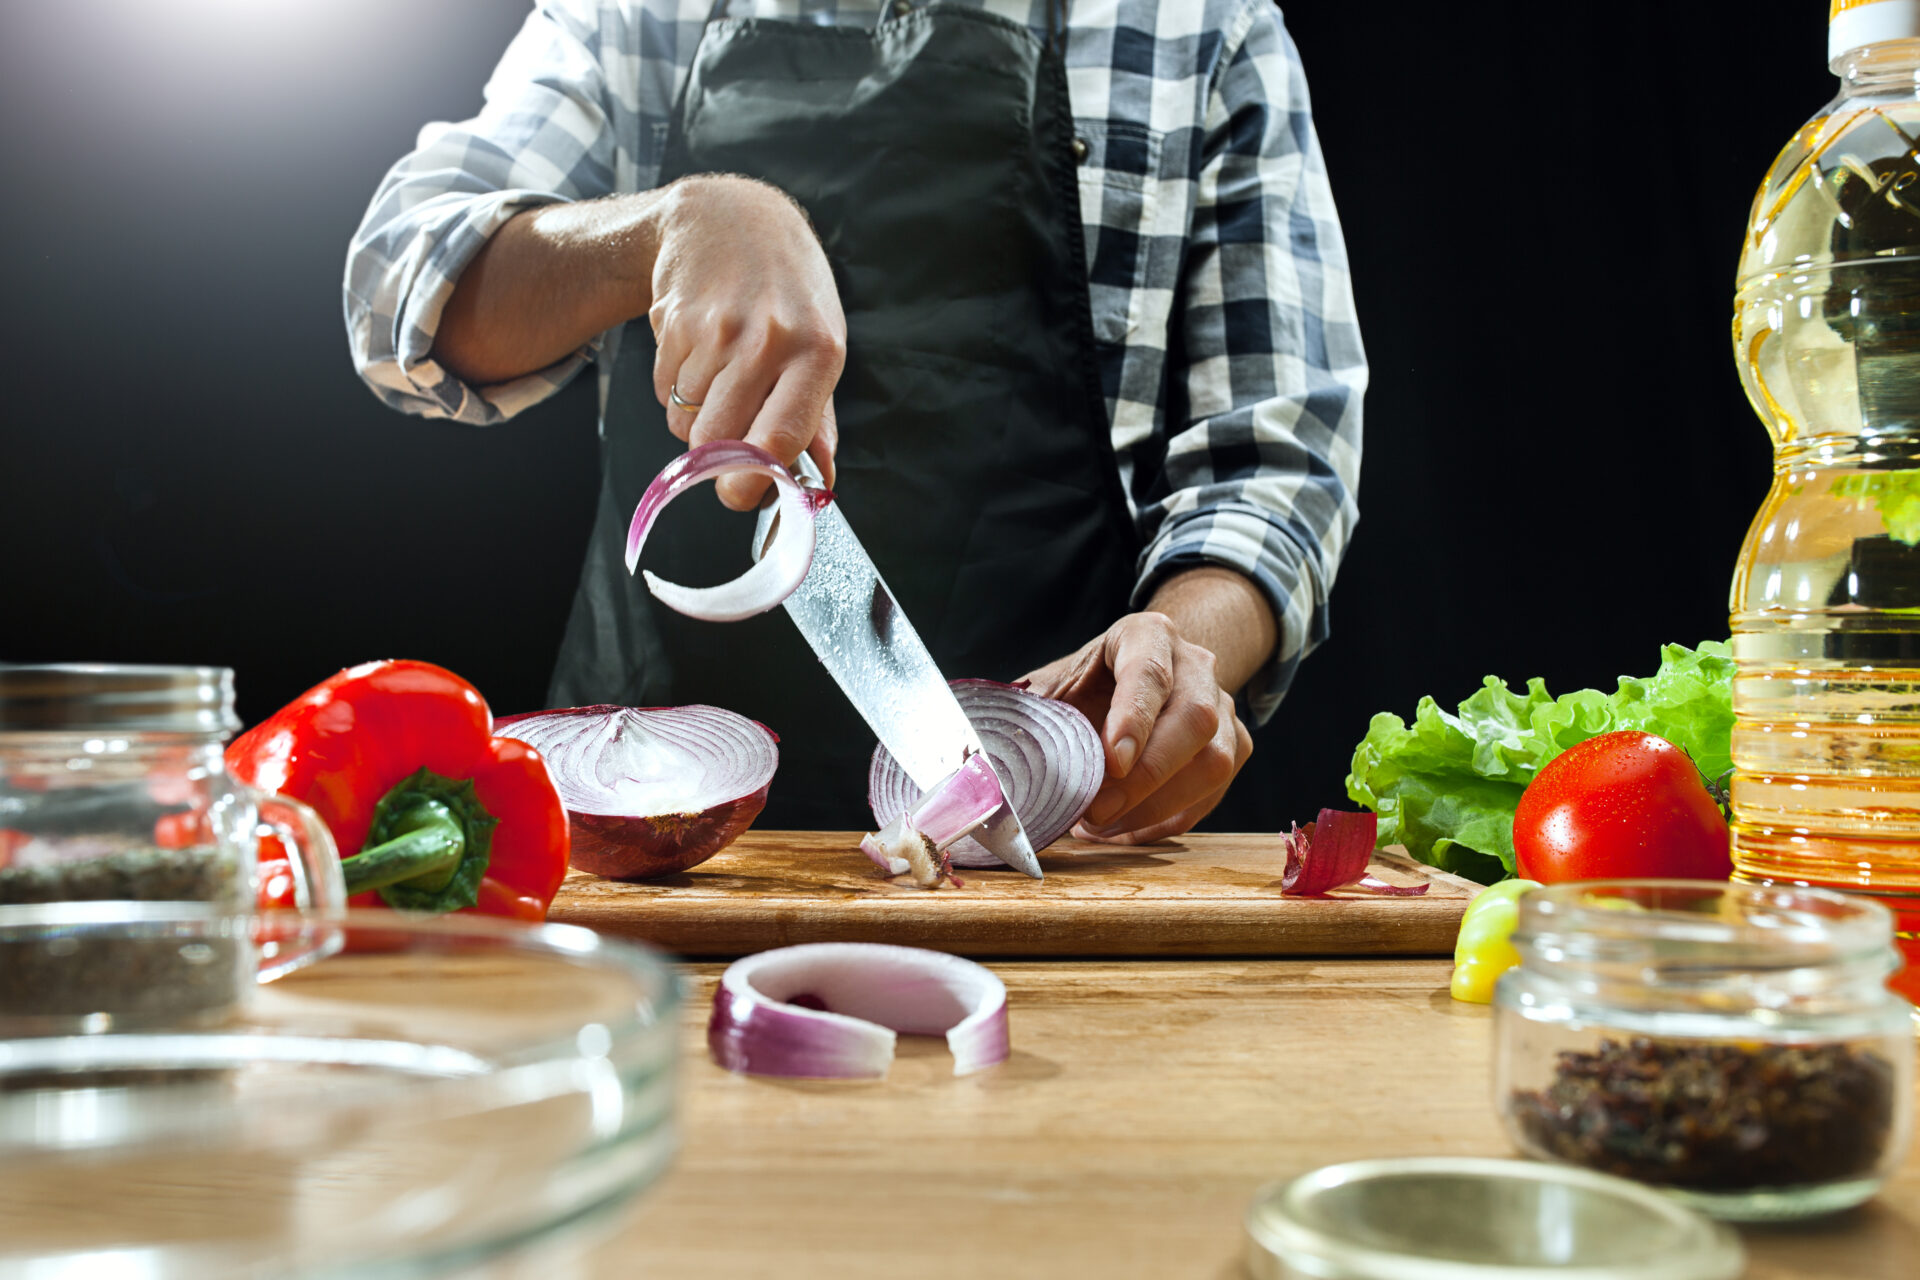 Qué cuchillos ocupan los chefs profesionales? - Blog Steward